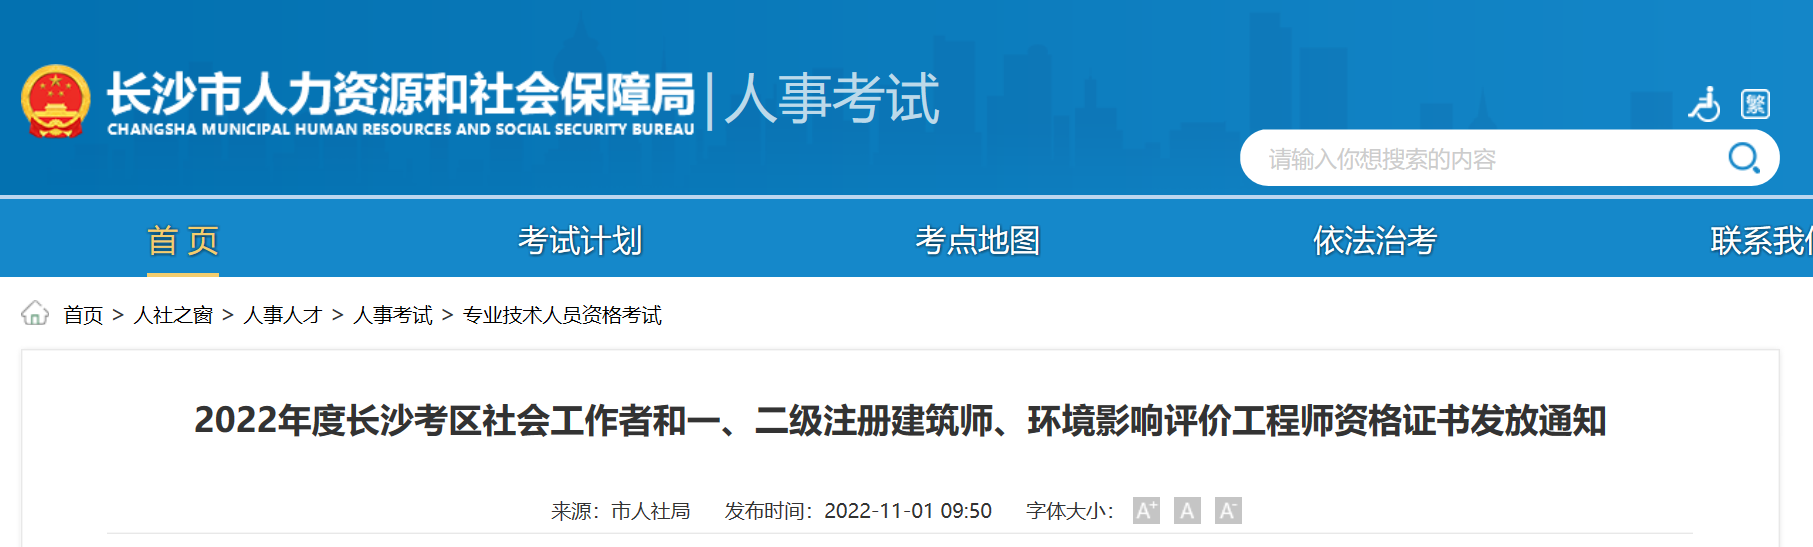 2022年湖南长沙社会工作者资格证书发放通知